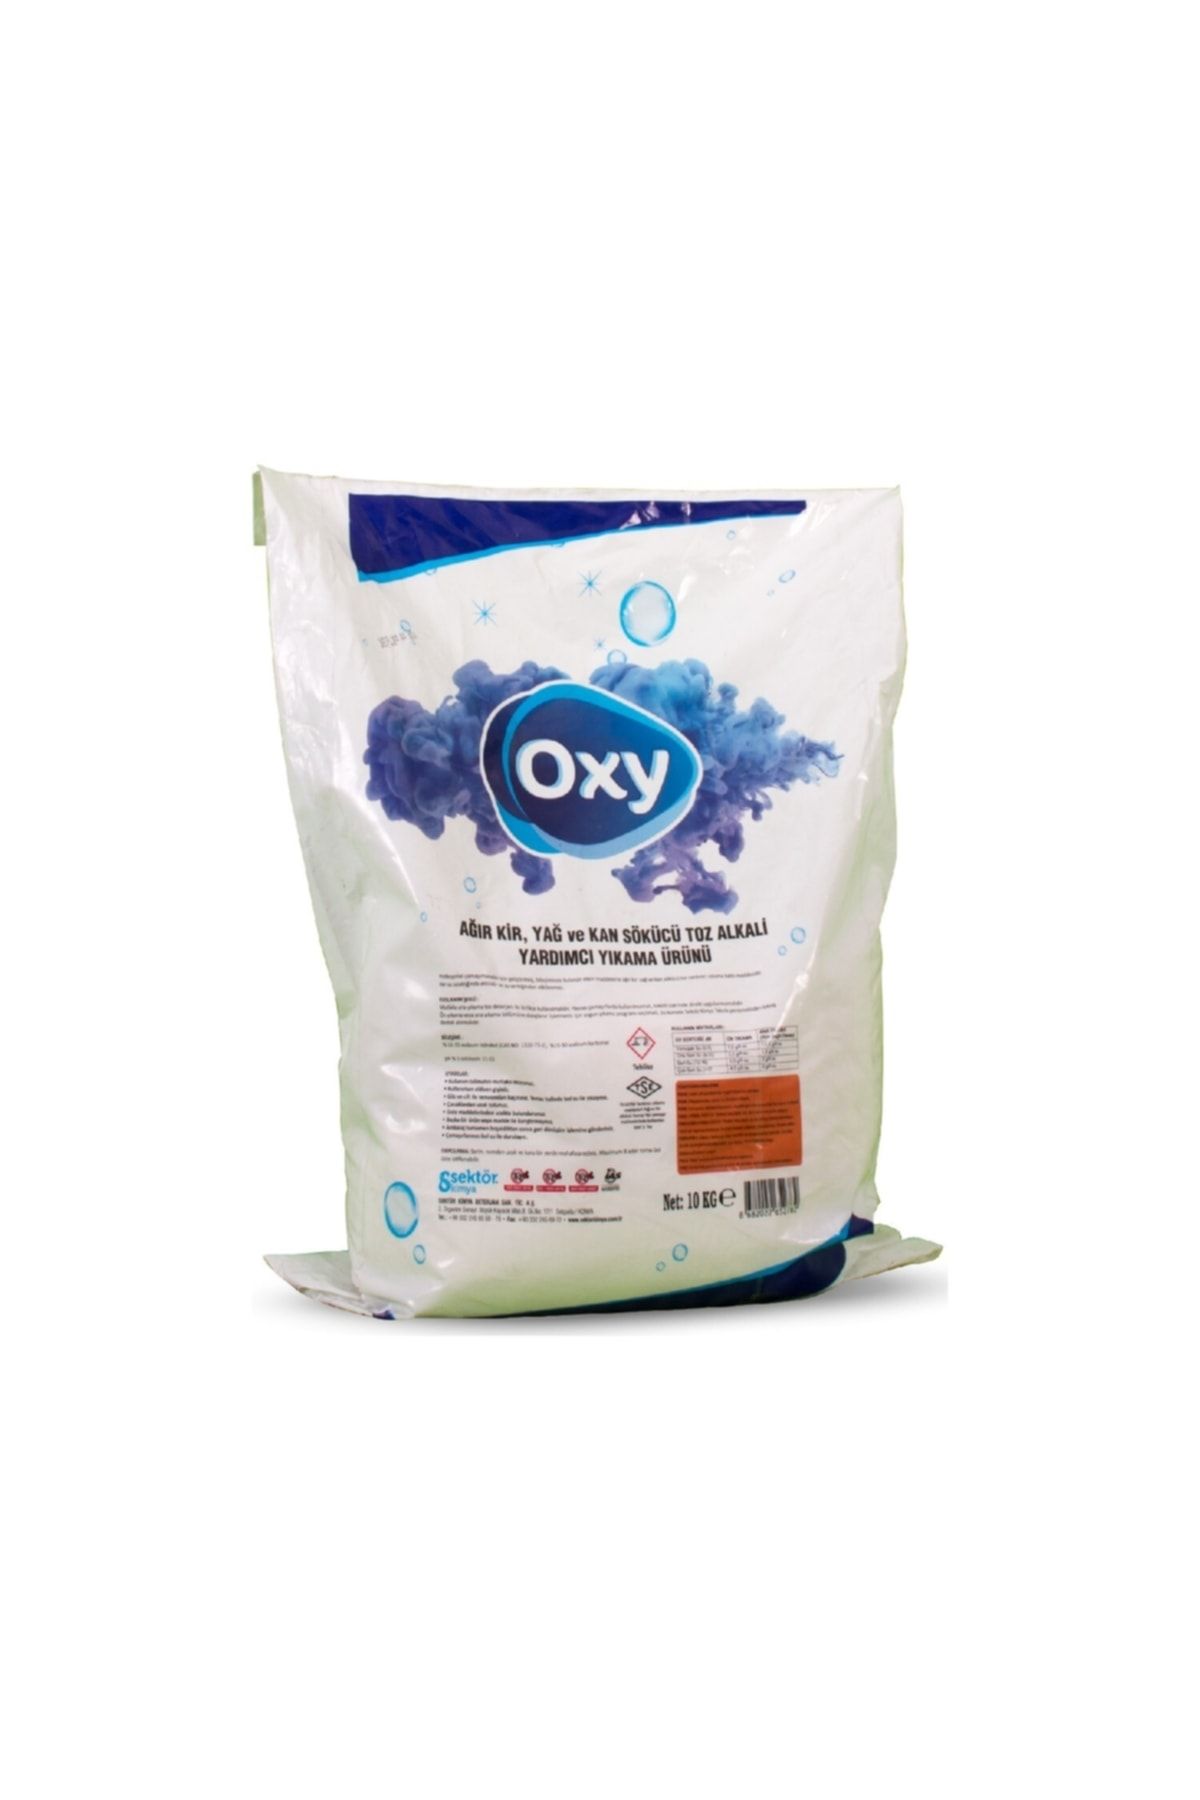 Oxy Ağır Kir, Yağ ve Kan Sökücü (TS 13758) (10 Kg) (Çuval)